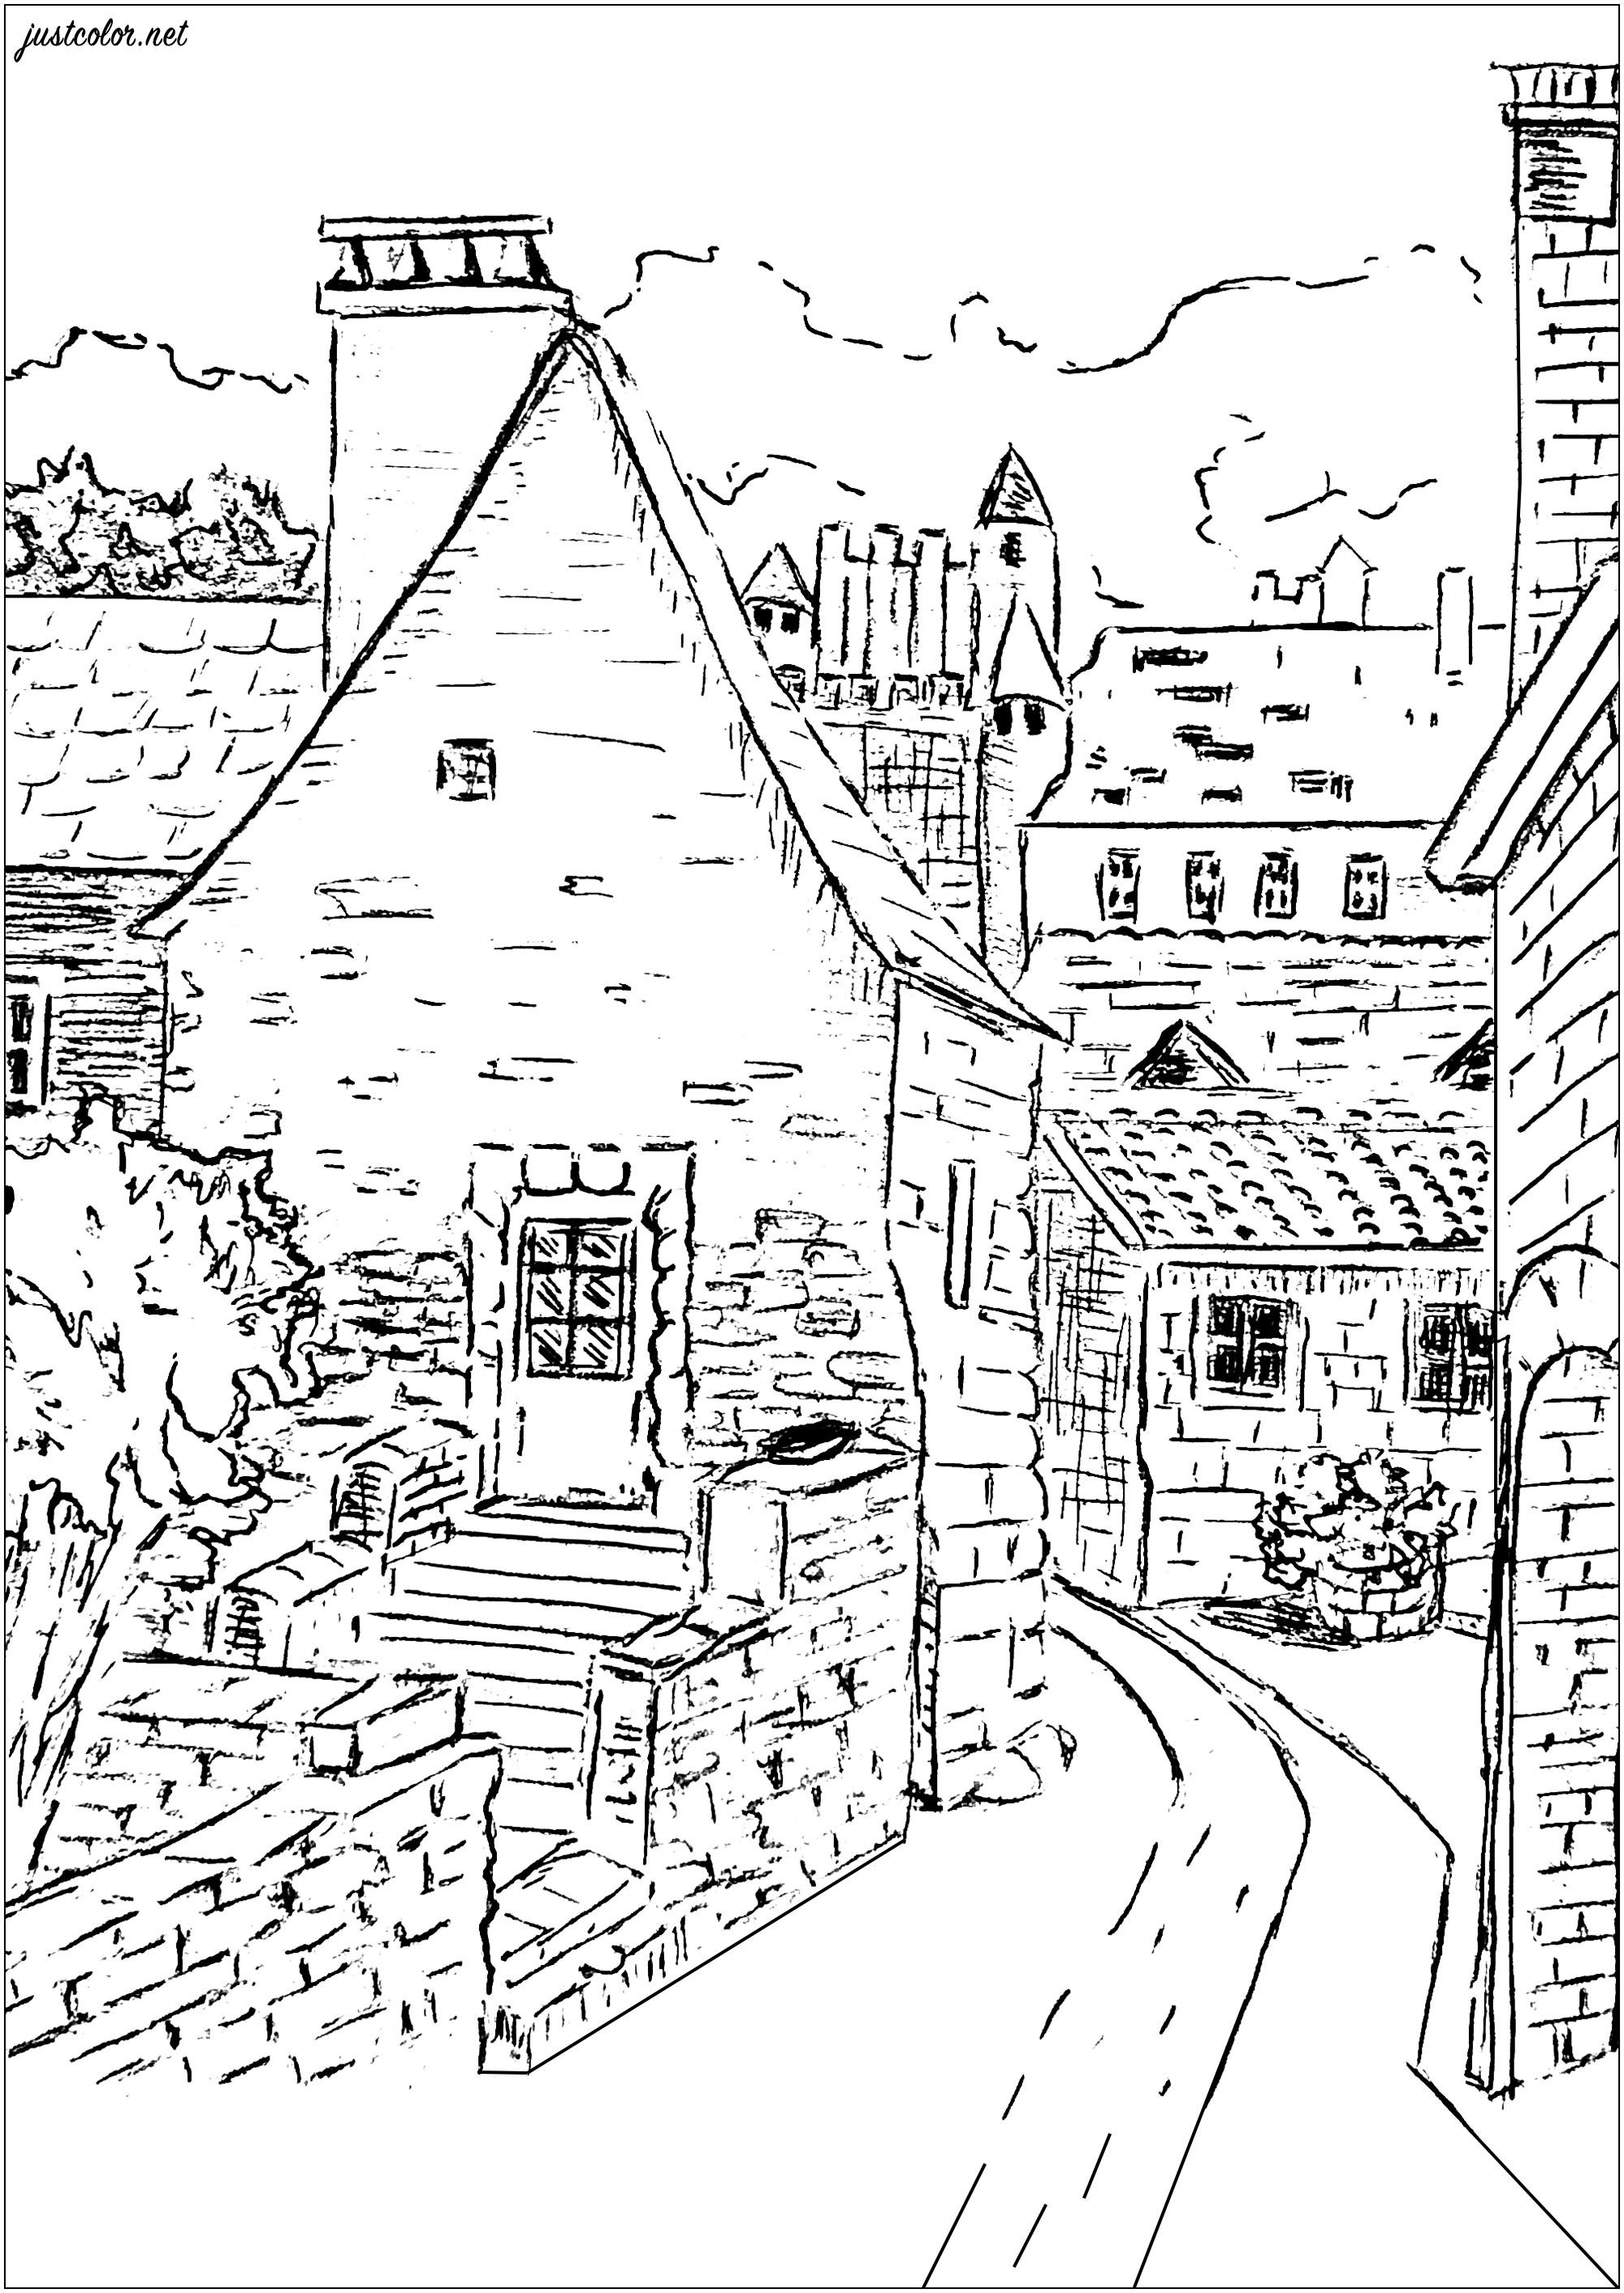 Visite (con sus lápices y rotuladores) esta bonita aldea de Dordoña, sus callejuelas y bonitas casas ...